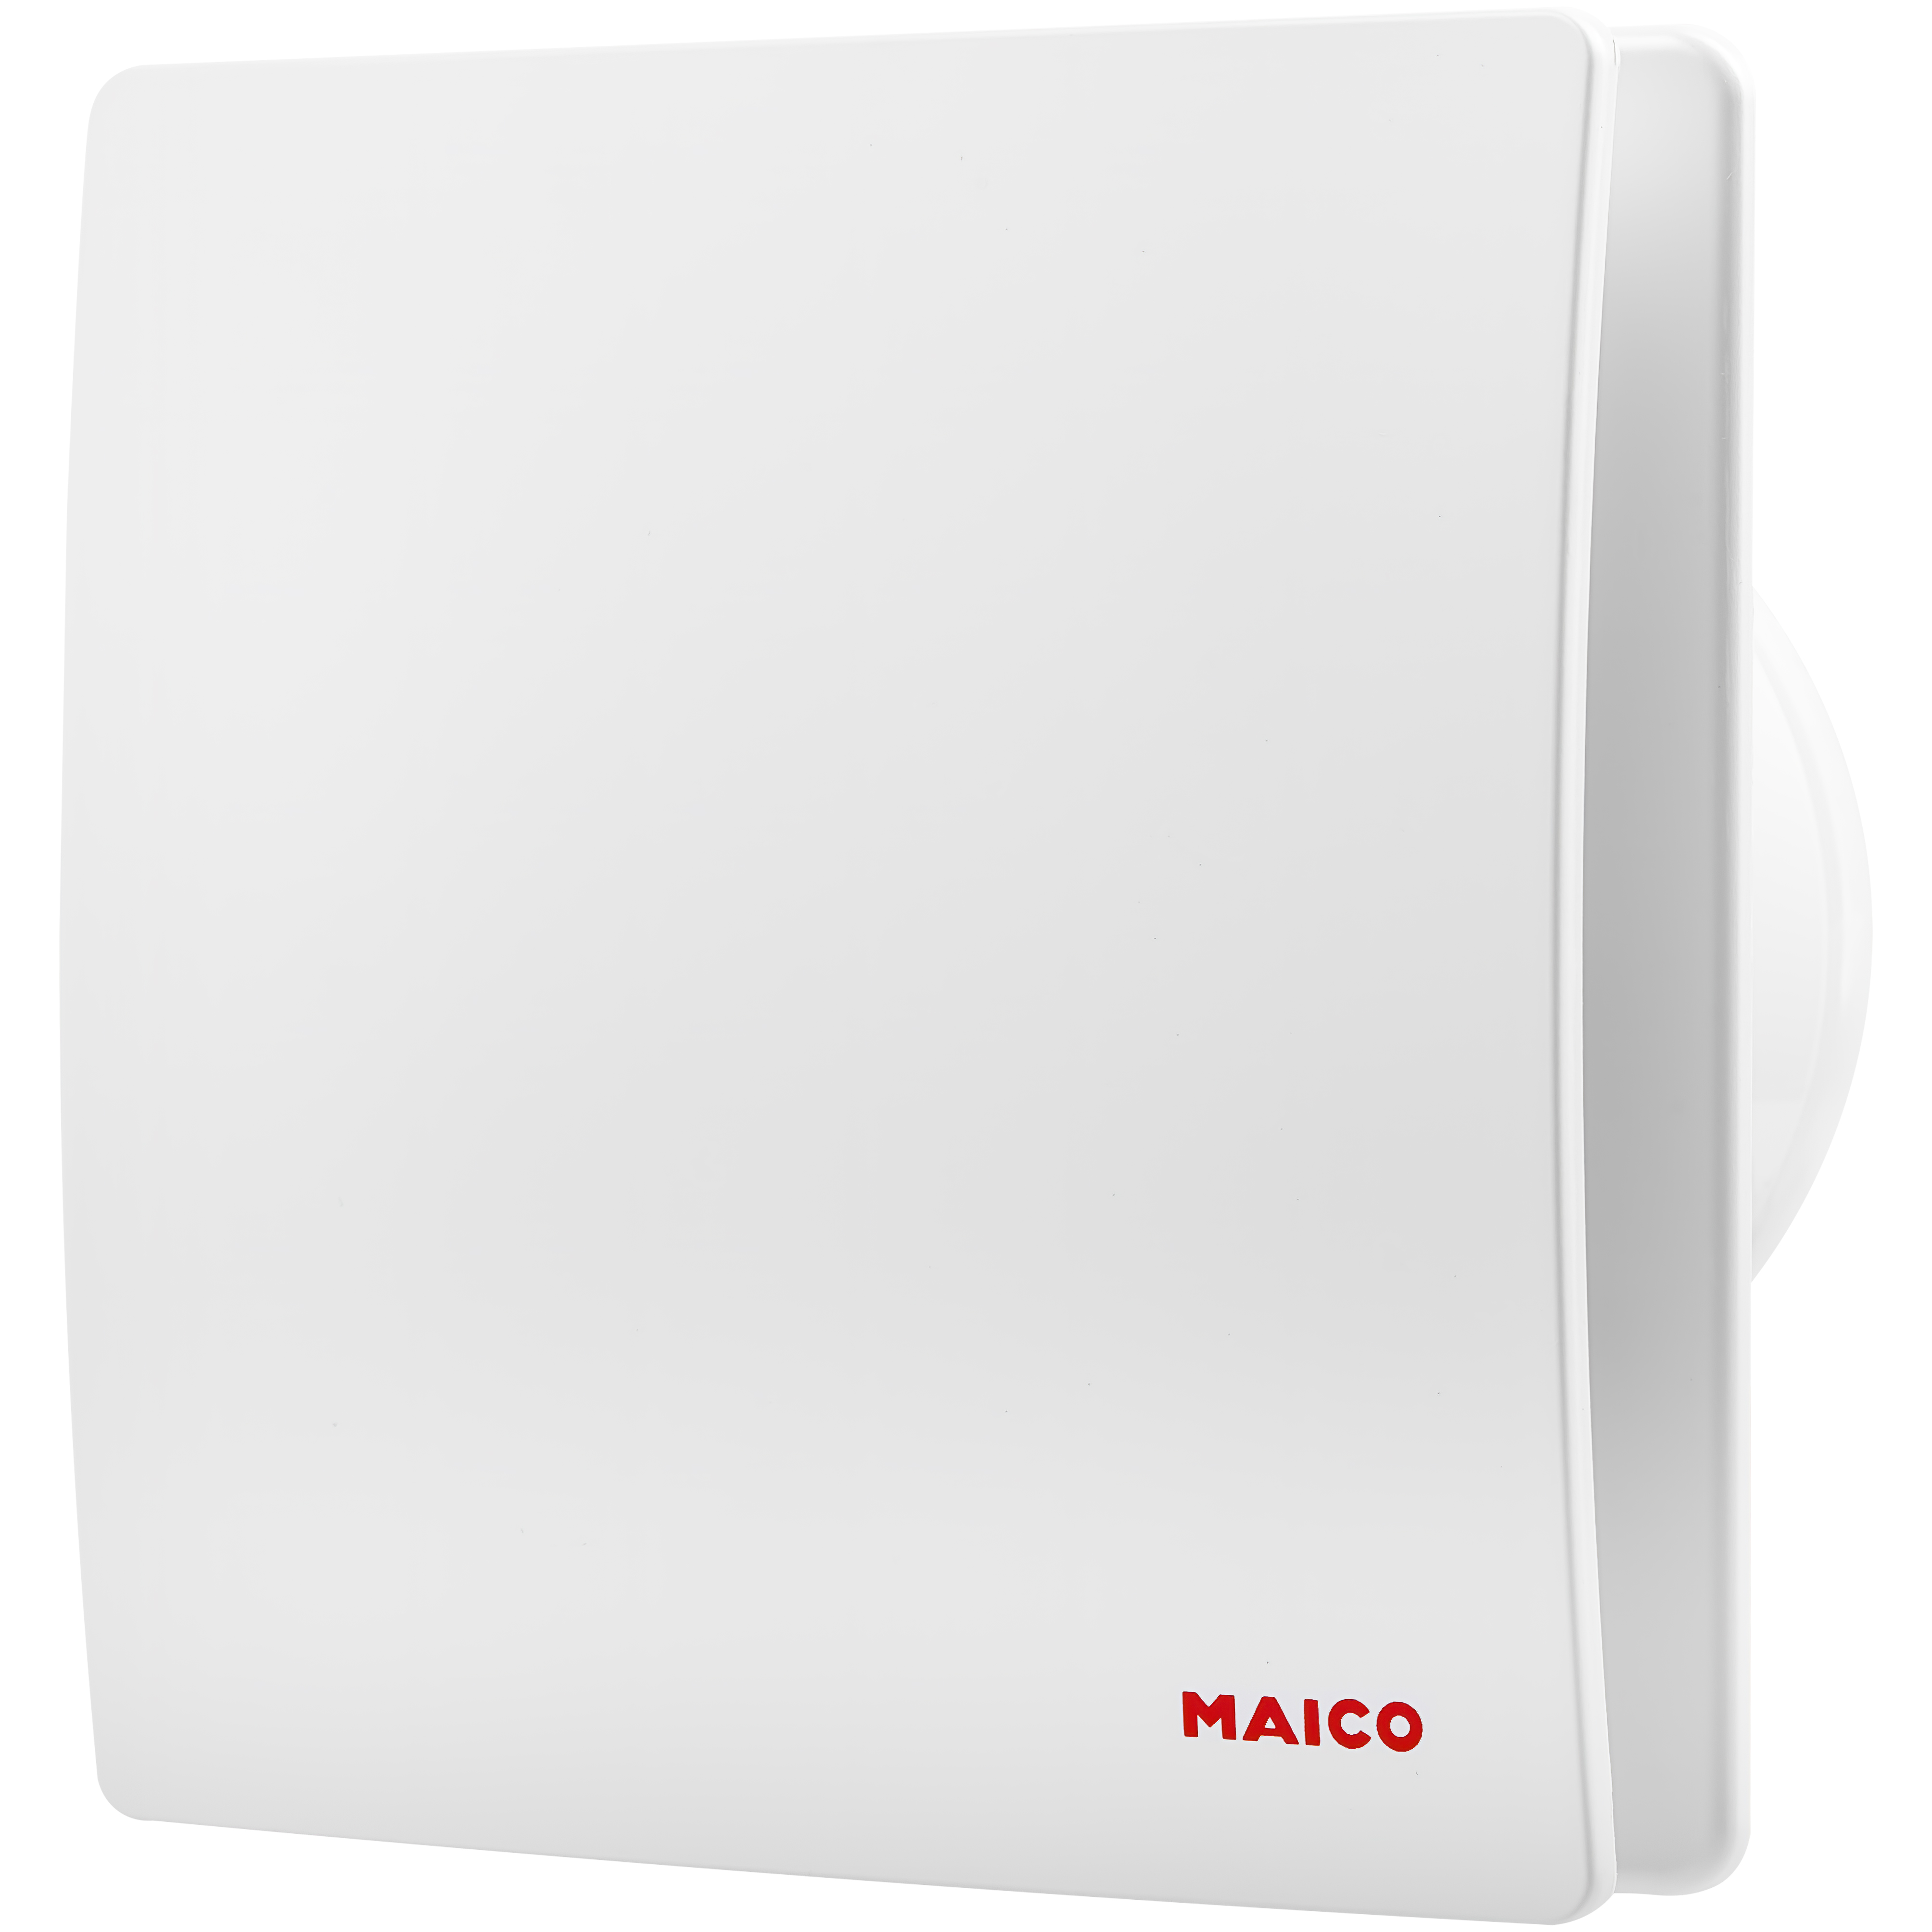 Вытяжной вентилятор Maico AWB 100 C в интернет-магазине, главное фото